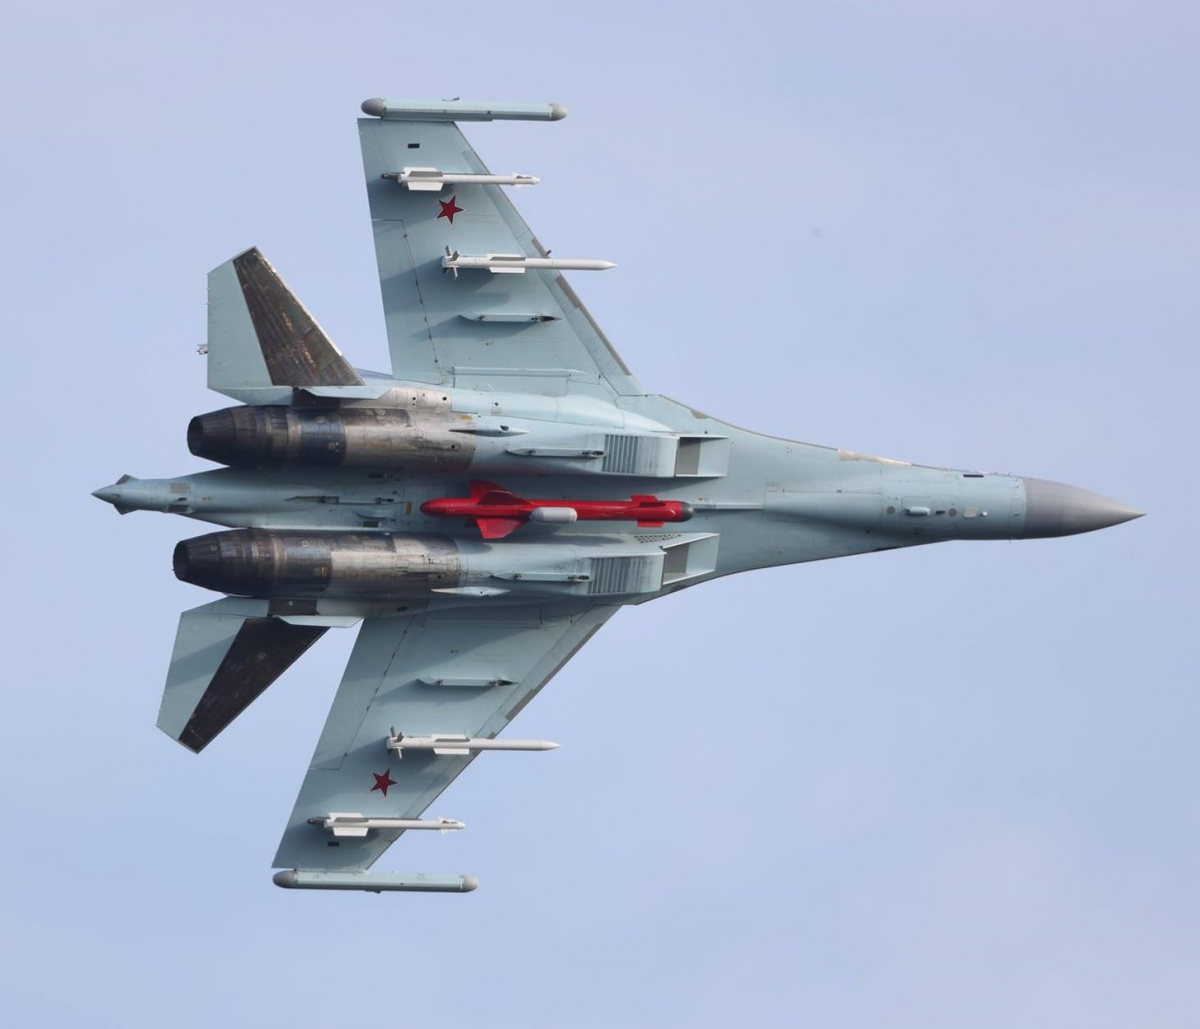 Le Su-35 dispose d'une large gamme d'armements, lui conférant des capacités anti-aériennes, d'attaque au sol et anti-navires.